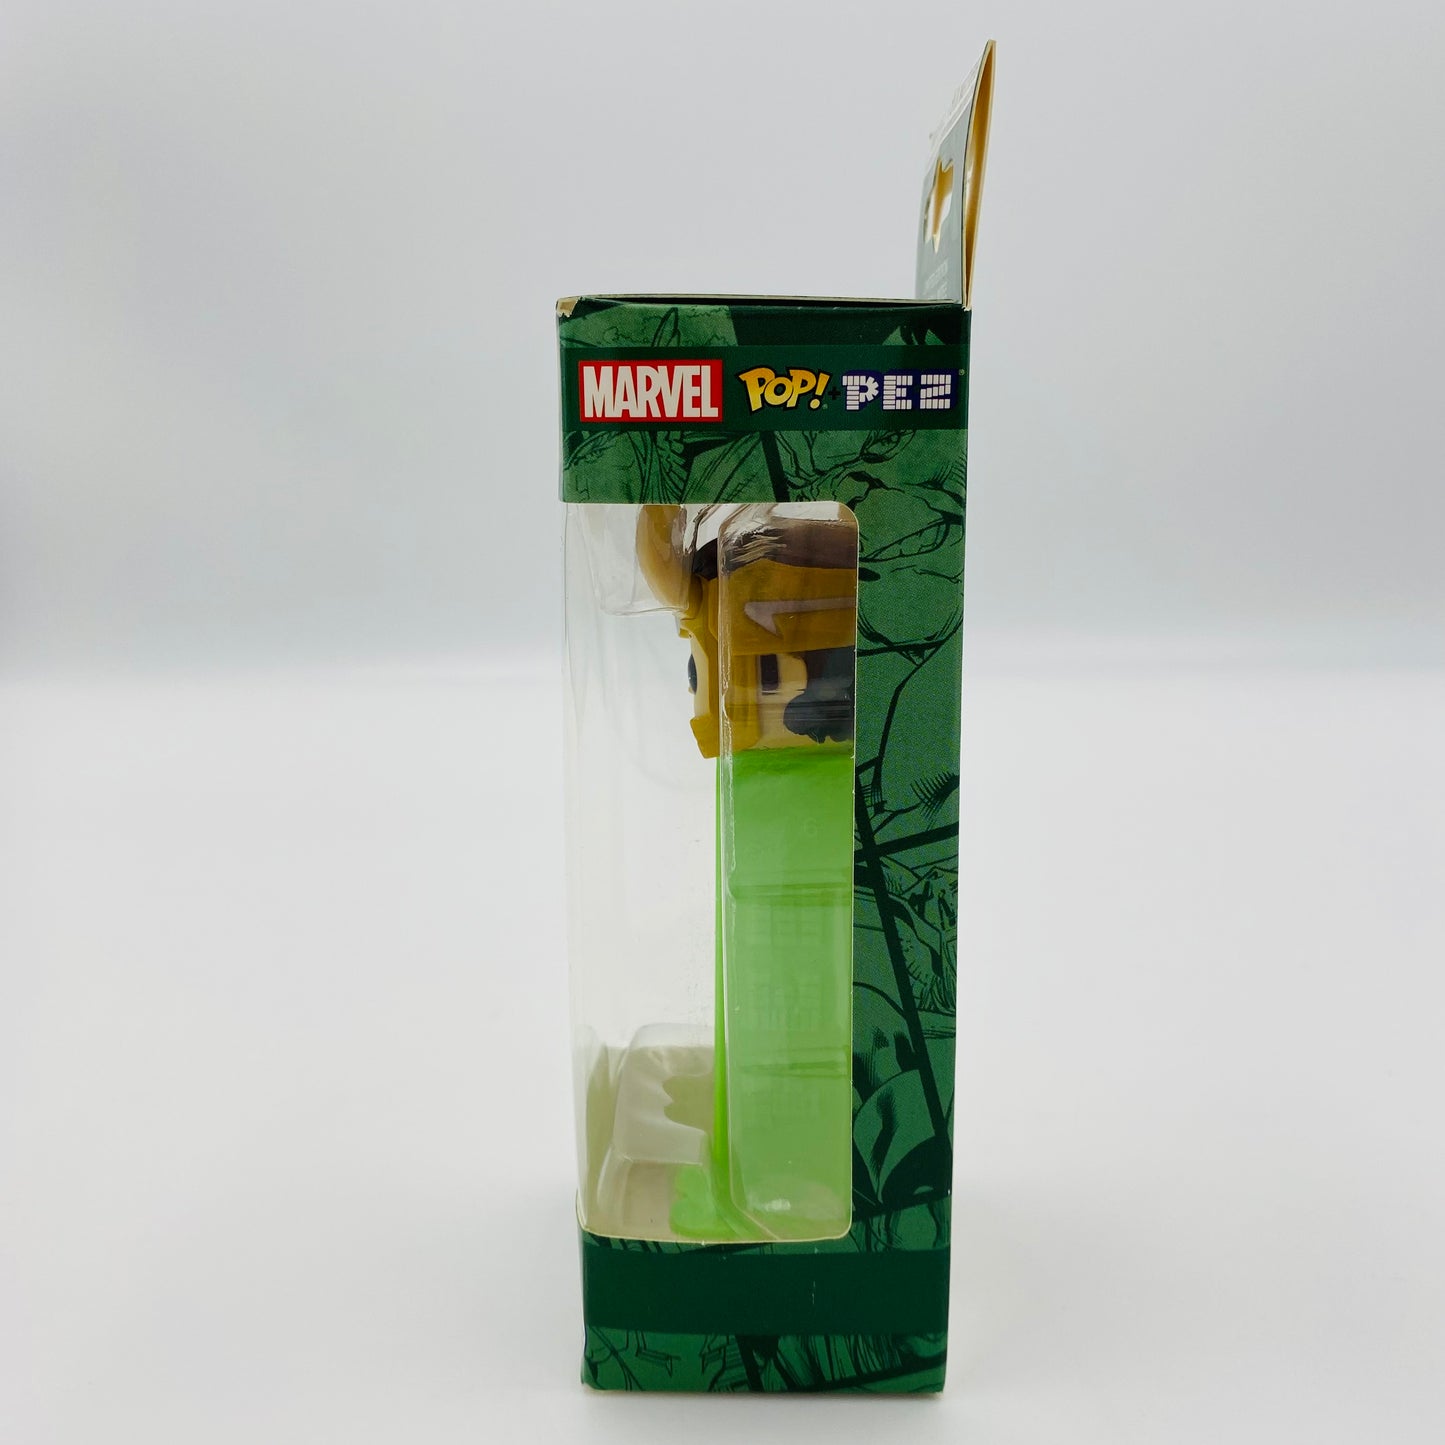 Marvel Thor Ragnarok Loki Pop! + PEZ dispenser (2018) boxed